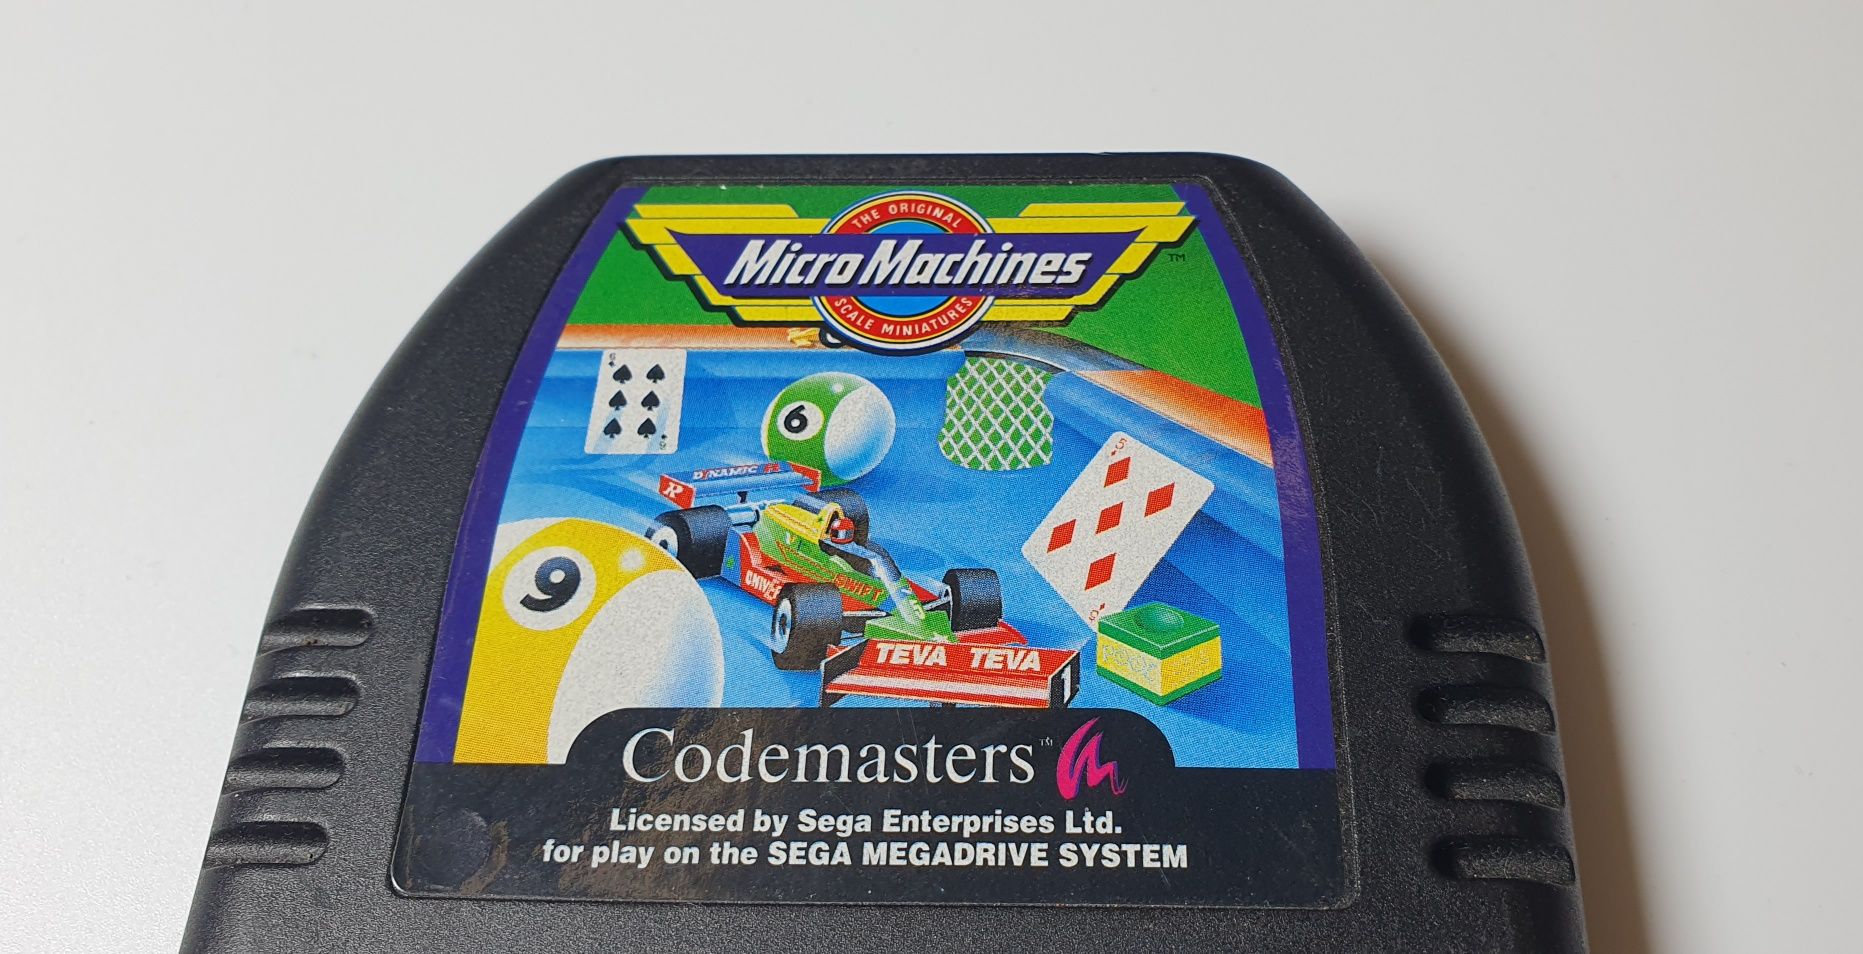 "Micro Machines" Codemaster SEGA Mega drive